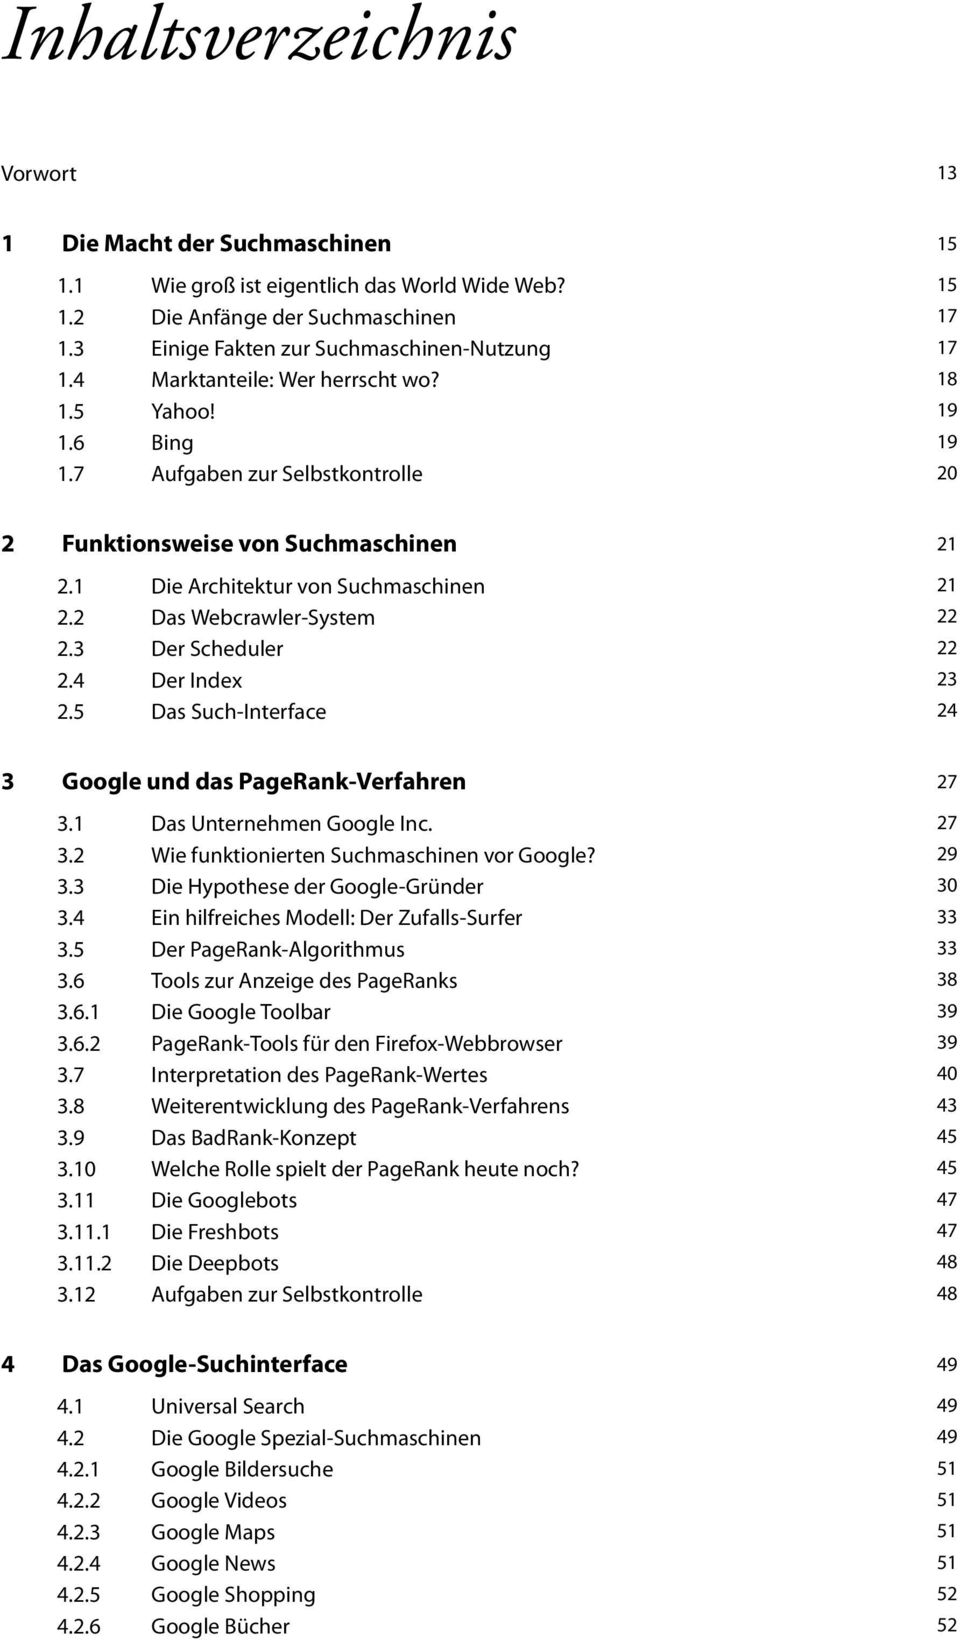 5 Die Architektur von Suchmaschinen Das Webcrawler-System Der Scheduler Der Index Das Such-Interface 21 21 22 22 23 24 3 Google und das PageRank-Verfahren 3.1 3.2 3.3 3.4 3.5 3.6 3.6.1 3.6.2 3.7 3.